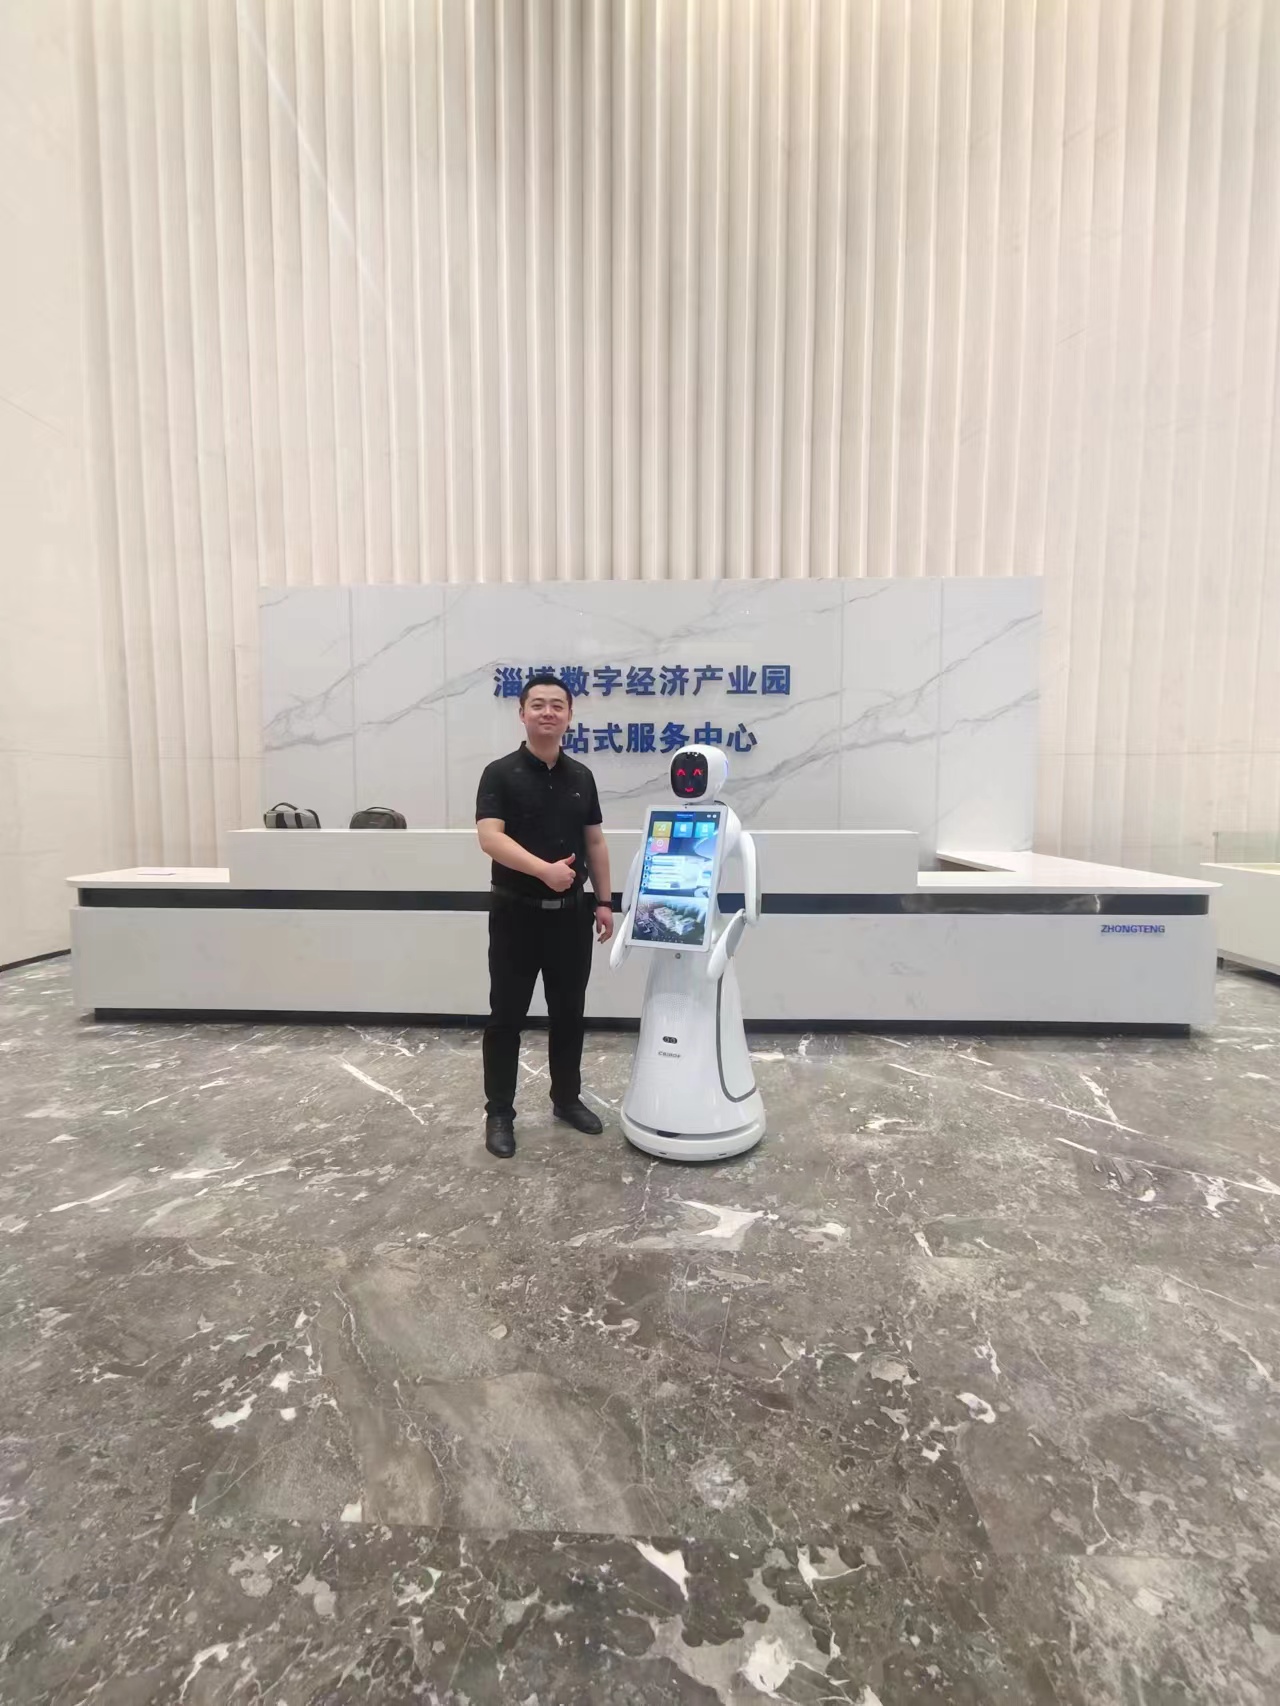 Parque industrial de economía digital Zibo: el robot de servicio Amy AI lidera una nueva experiencia en una visita inteligente